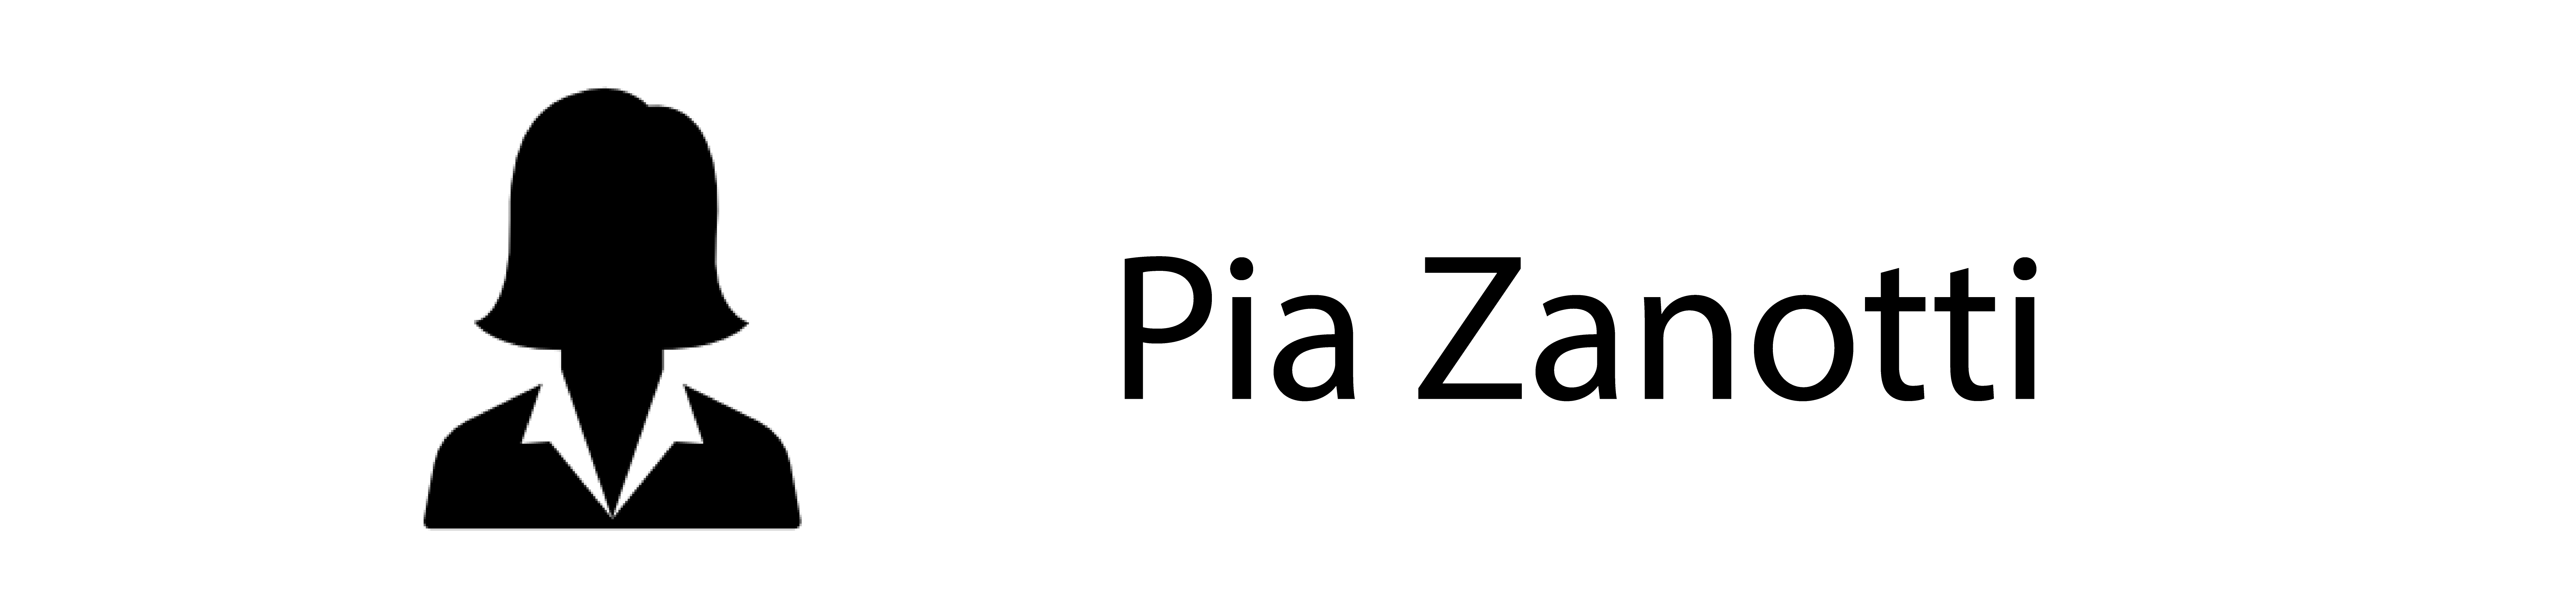 Pia Zanotti